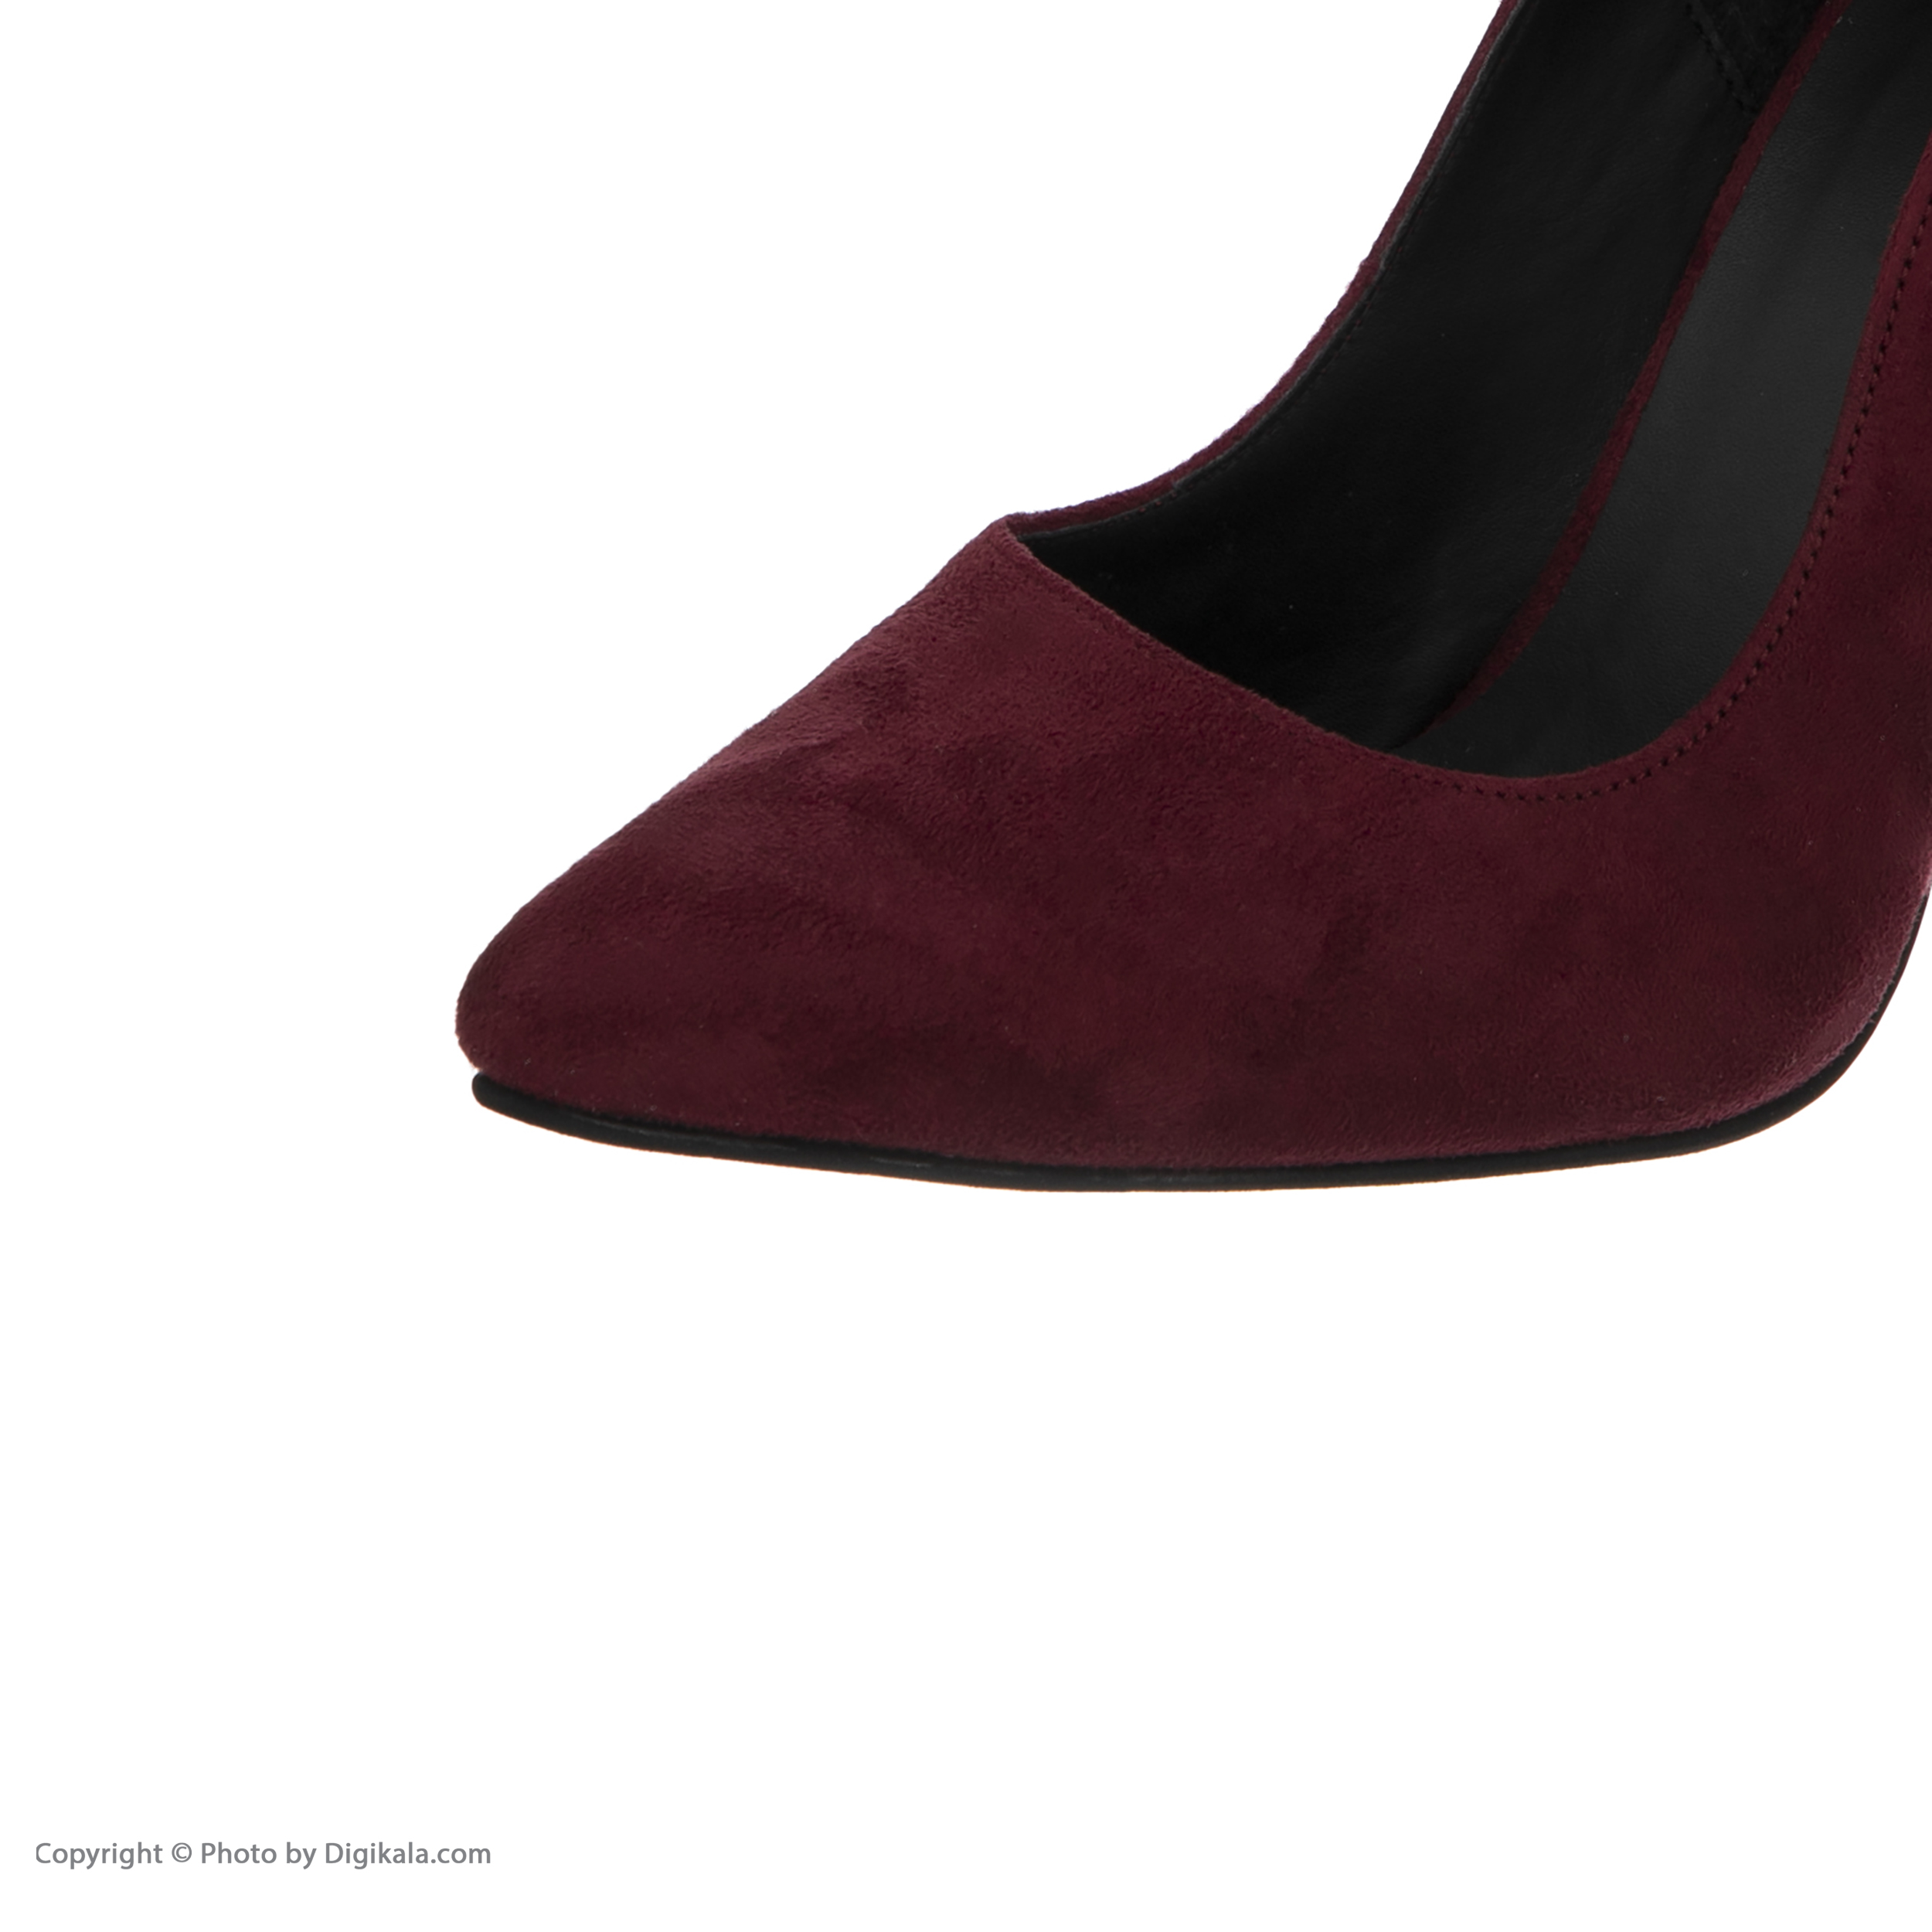 کفش زنانه پاریس هیلتون مدل psw21510 رنگ زرشکی -  - 3